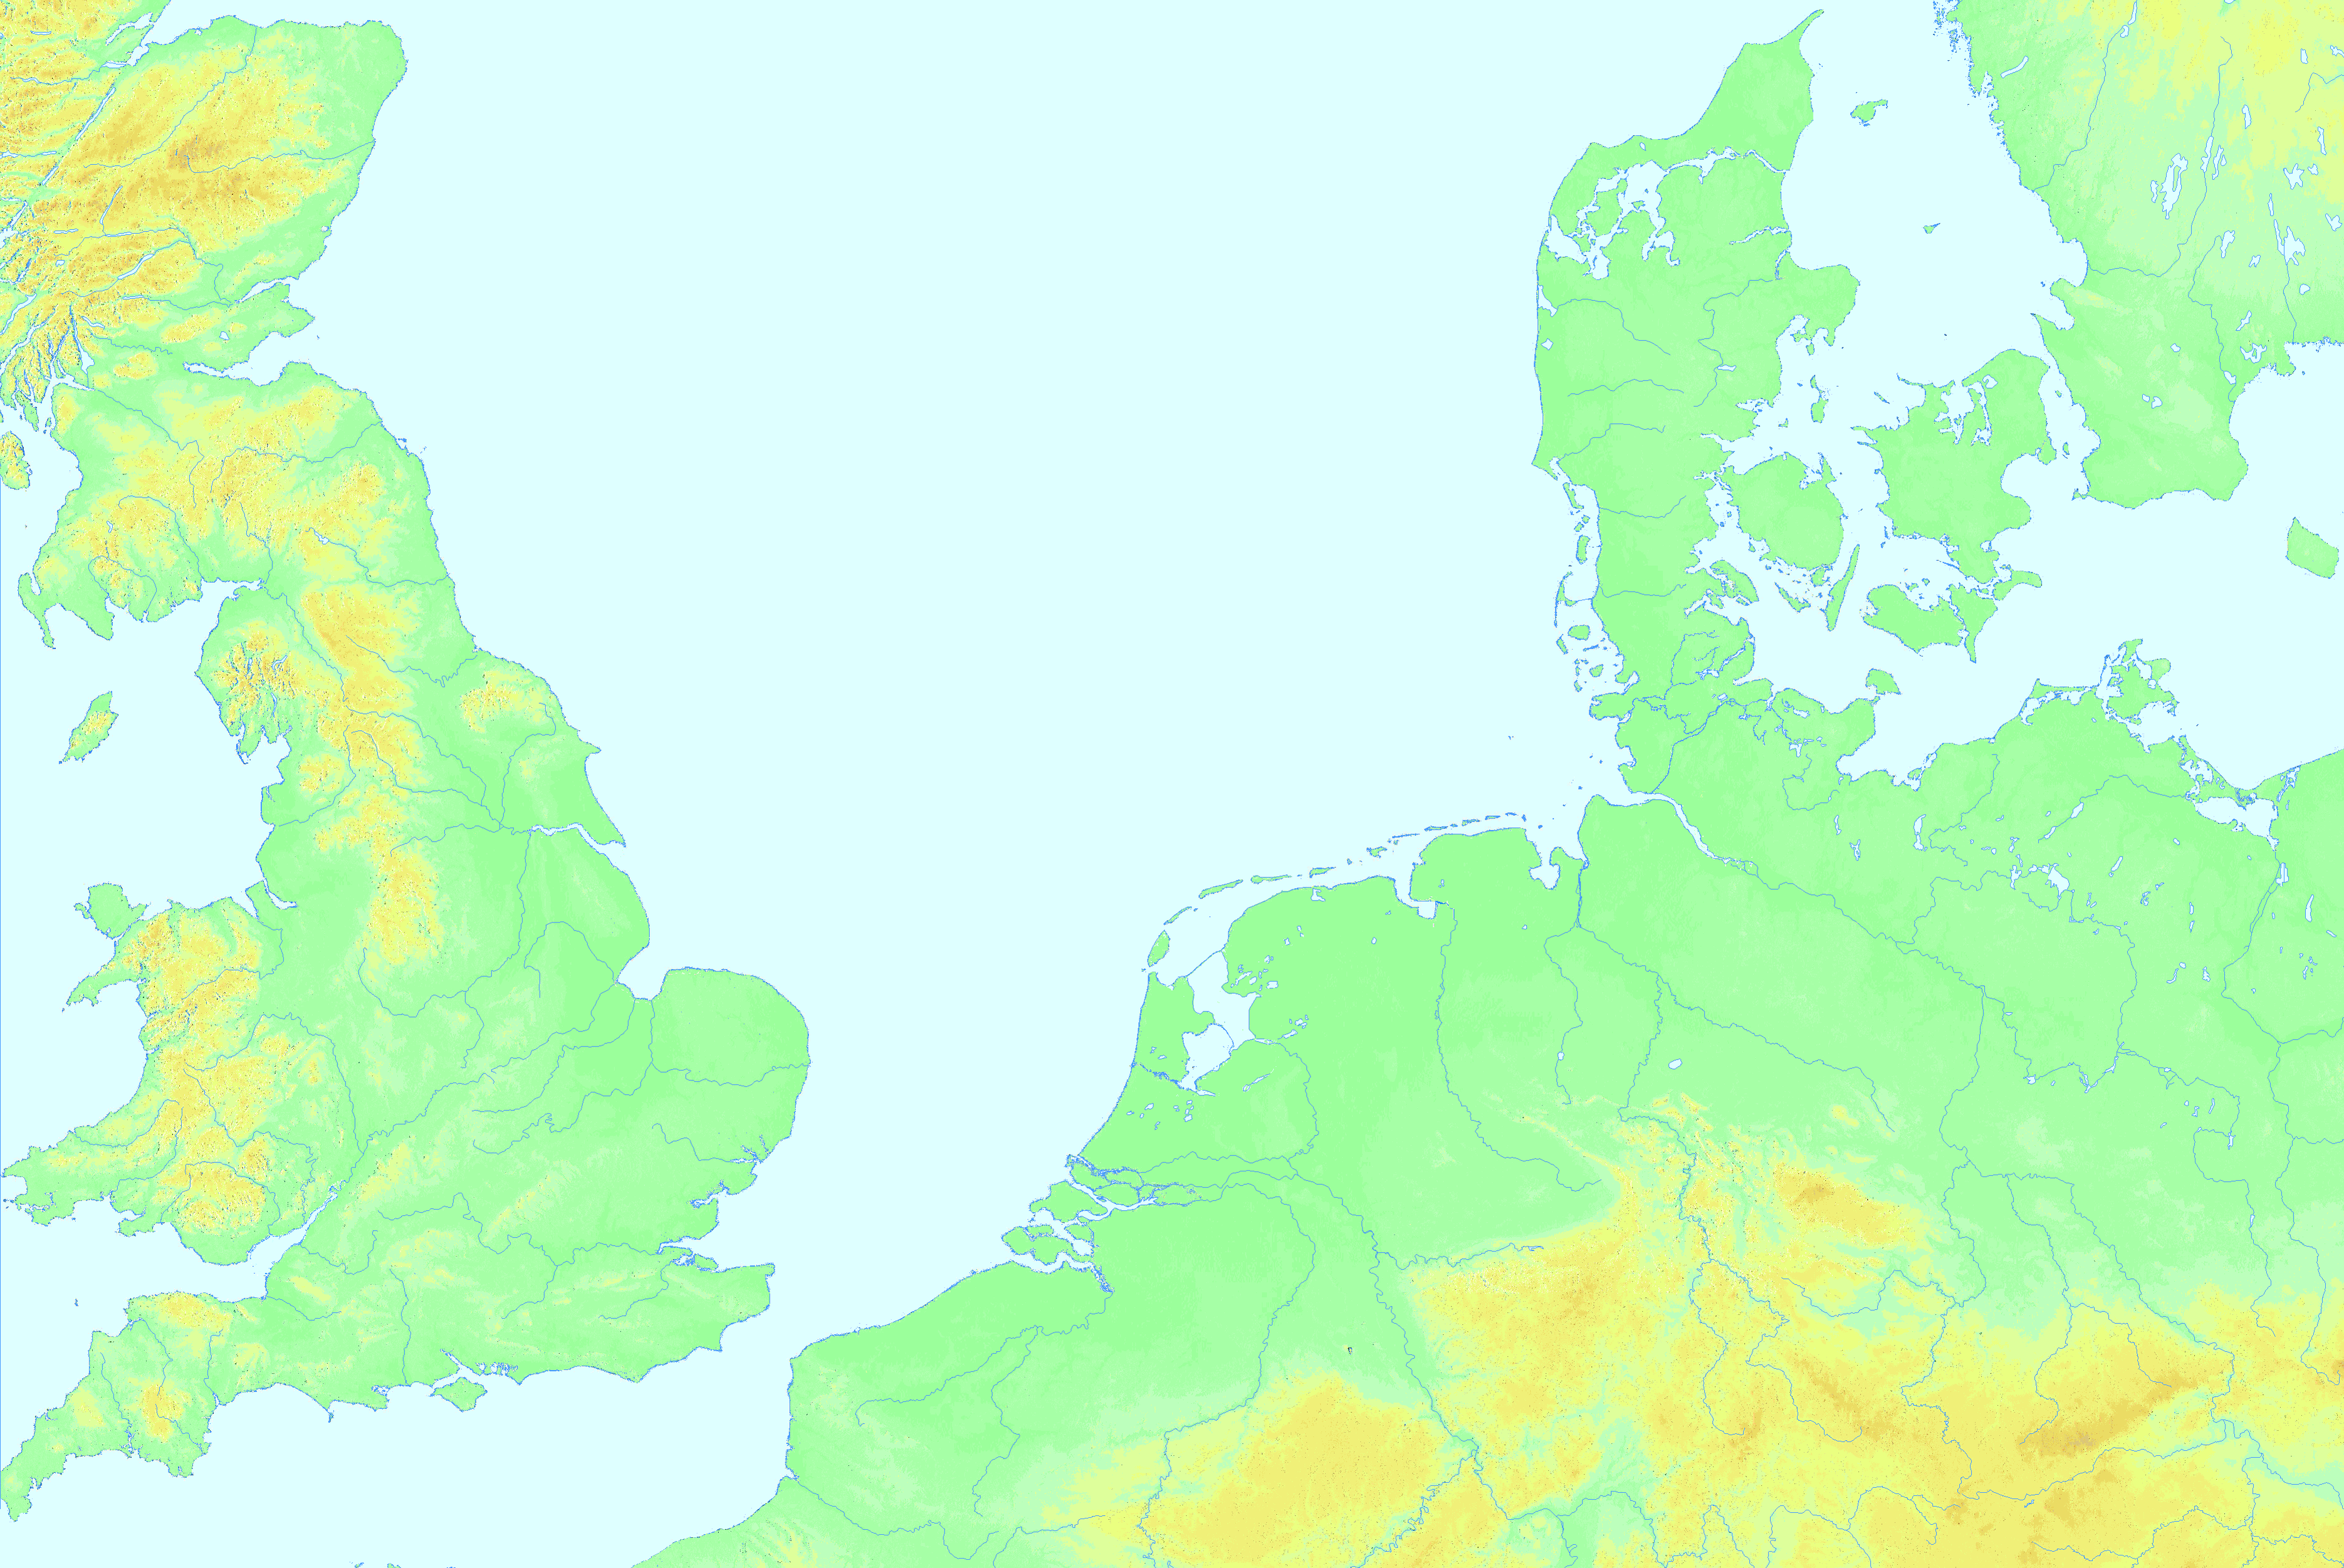 Ulamm/Verteilung in westlichen Randgebieten Polens (Nordsee)